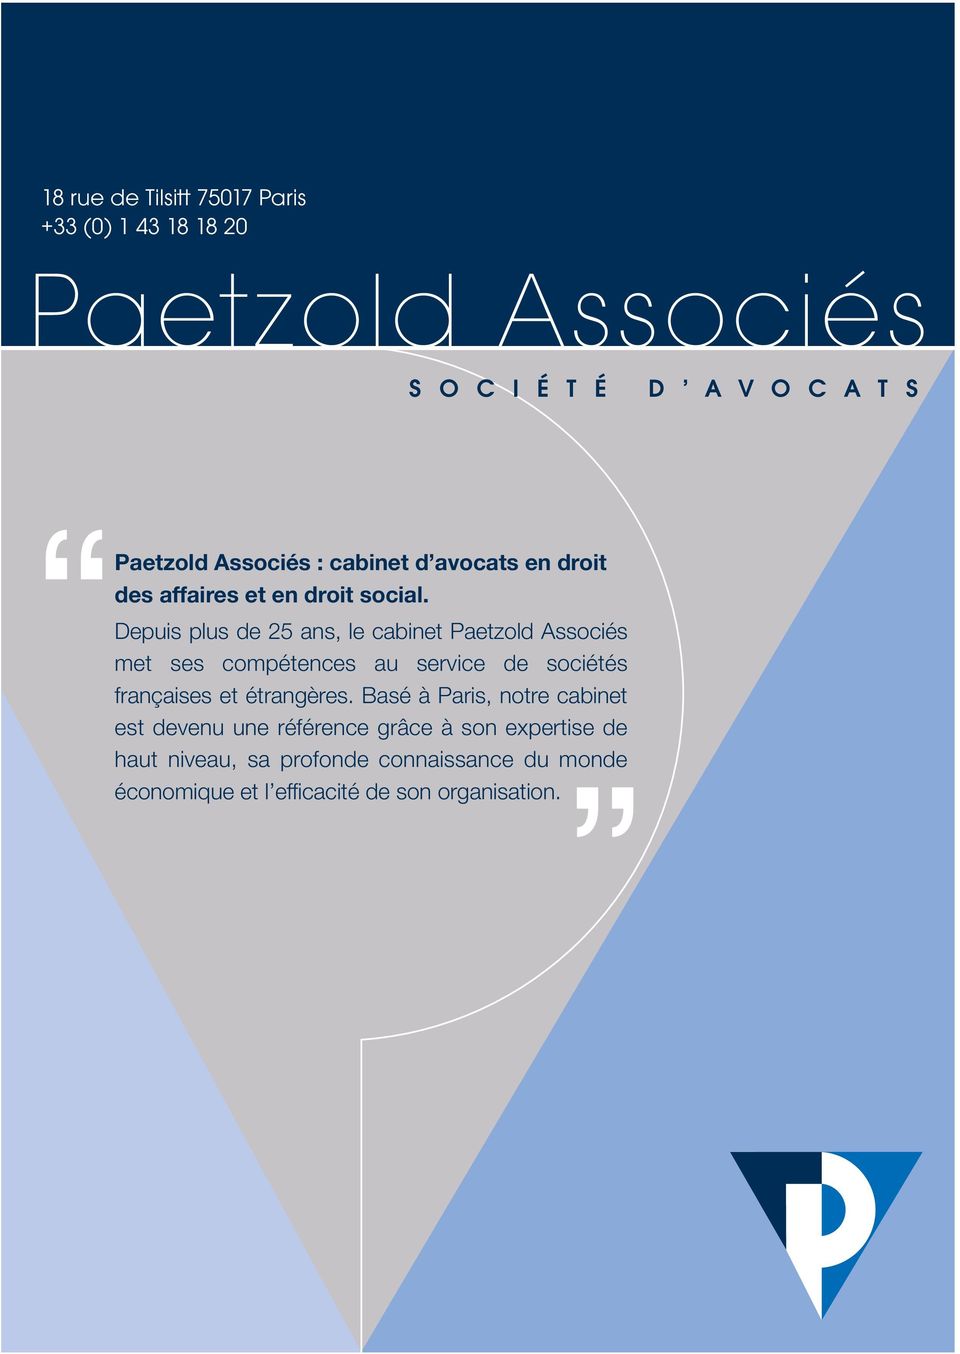 Depuis plus de 25 ans, le cabinet Paetzold Associés met ses compétences au service de sociétés françaises et